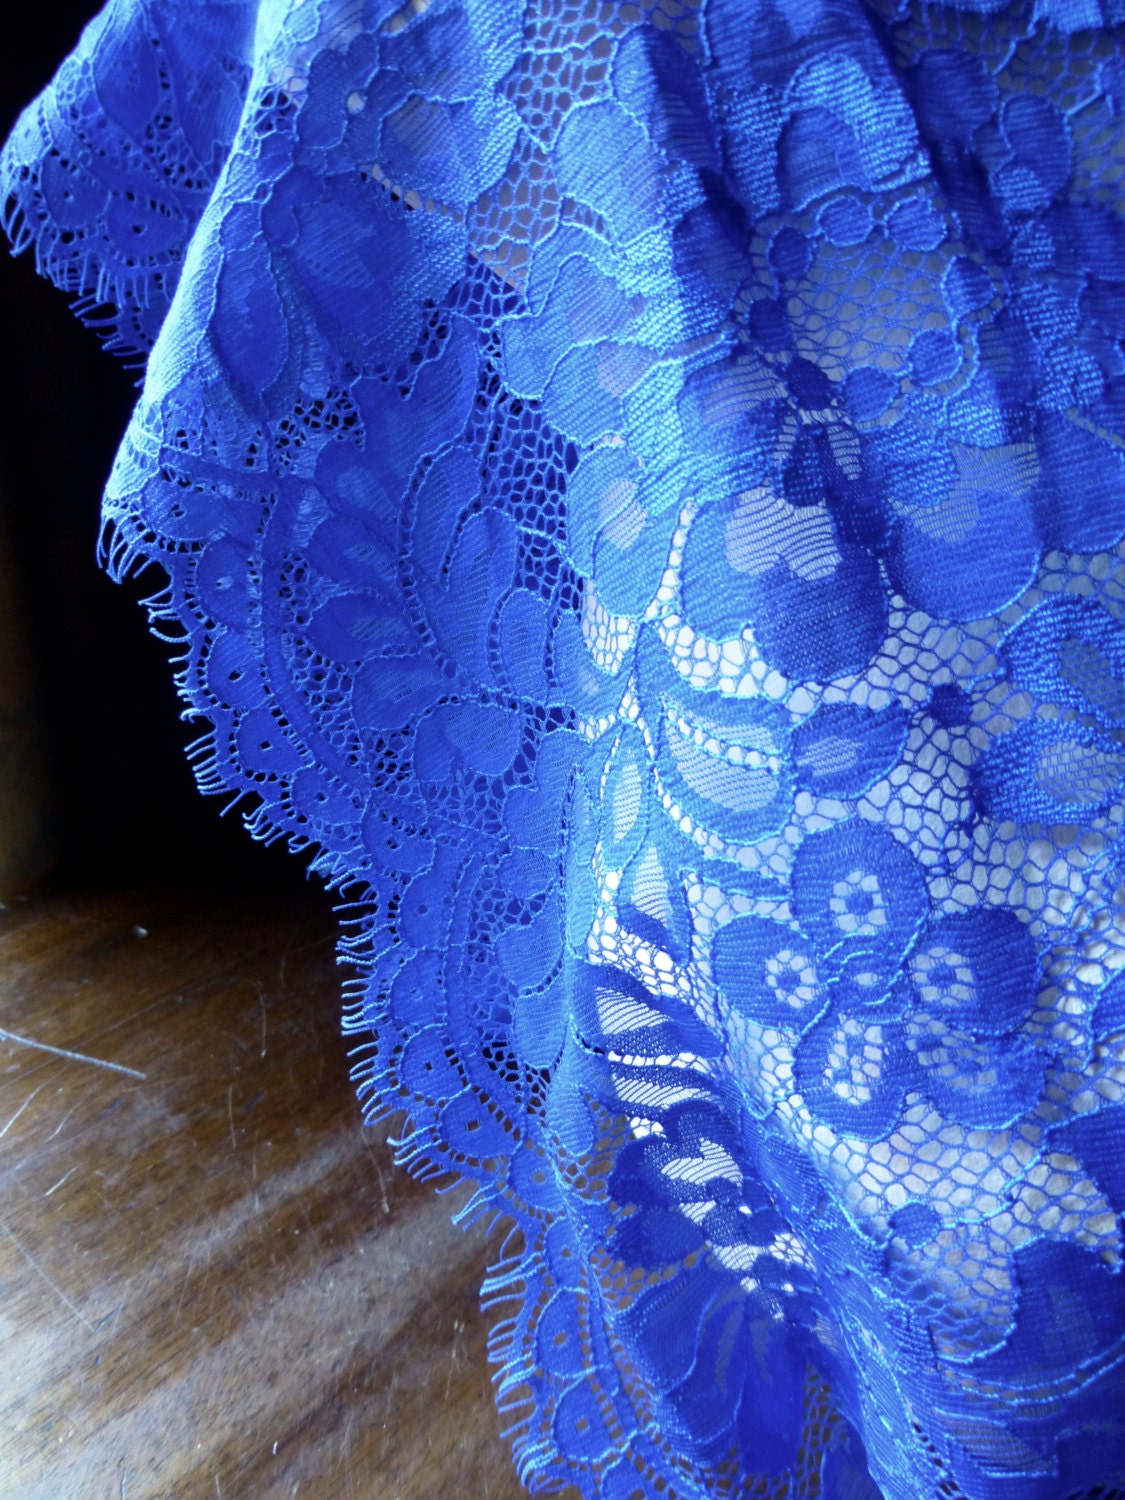 AQUA Eyelash Chantilly Lace Wide Trim for Garments Bridal | Etsy